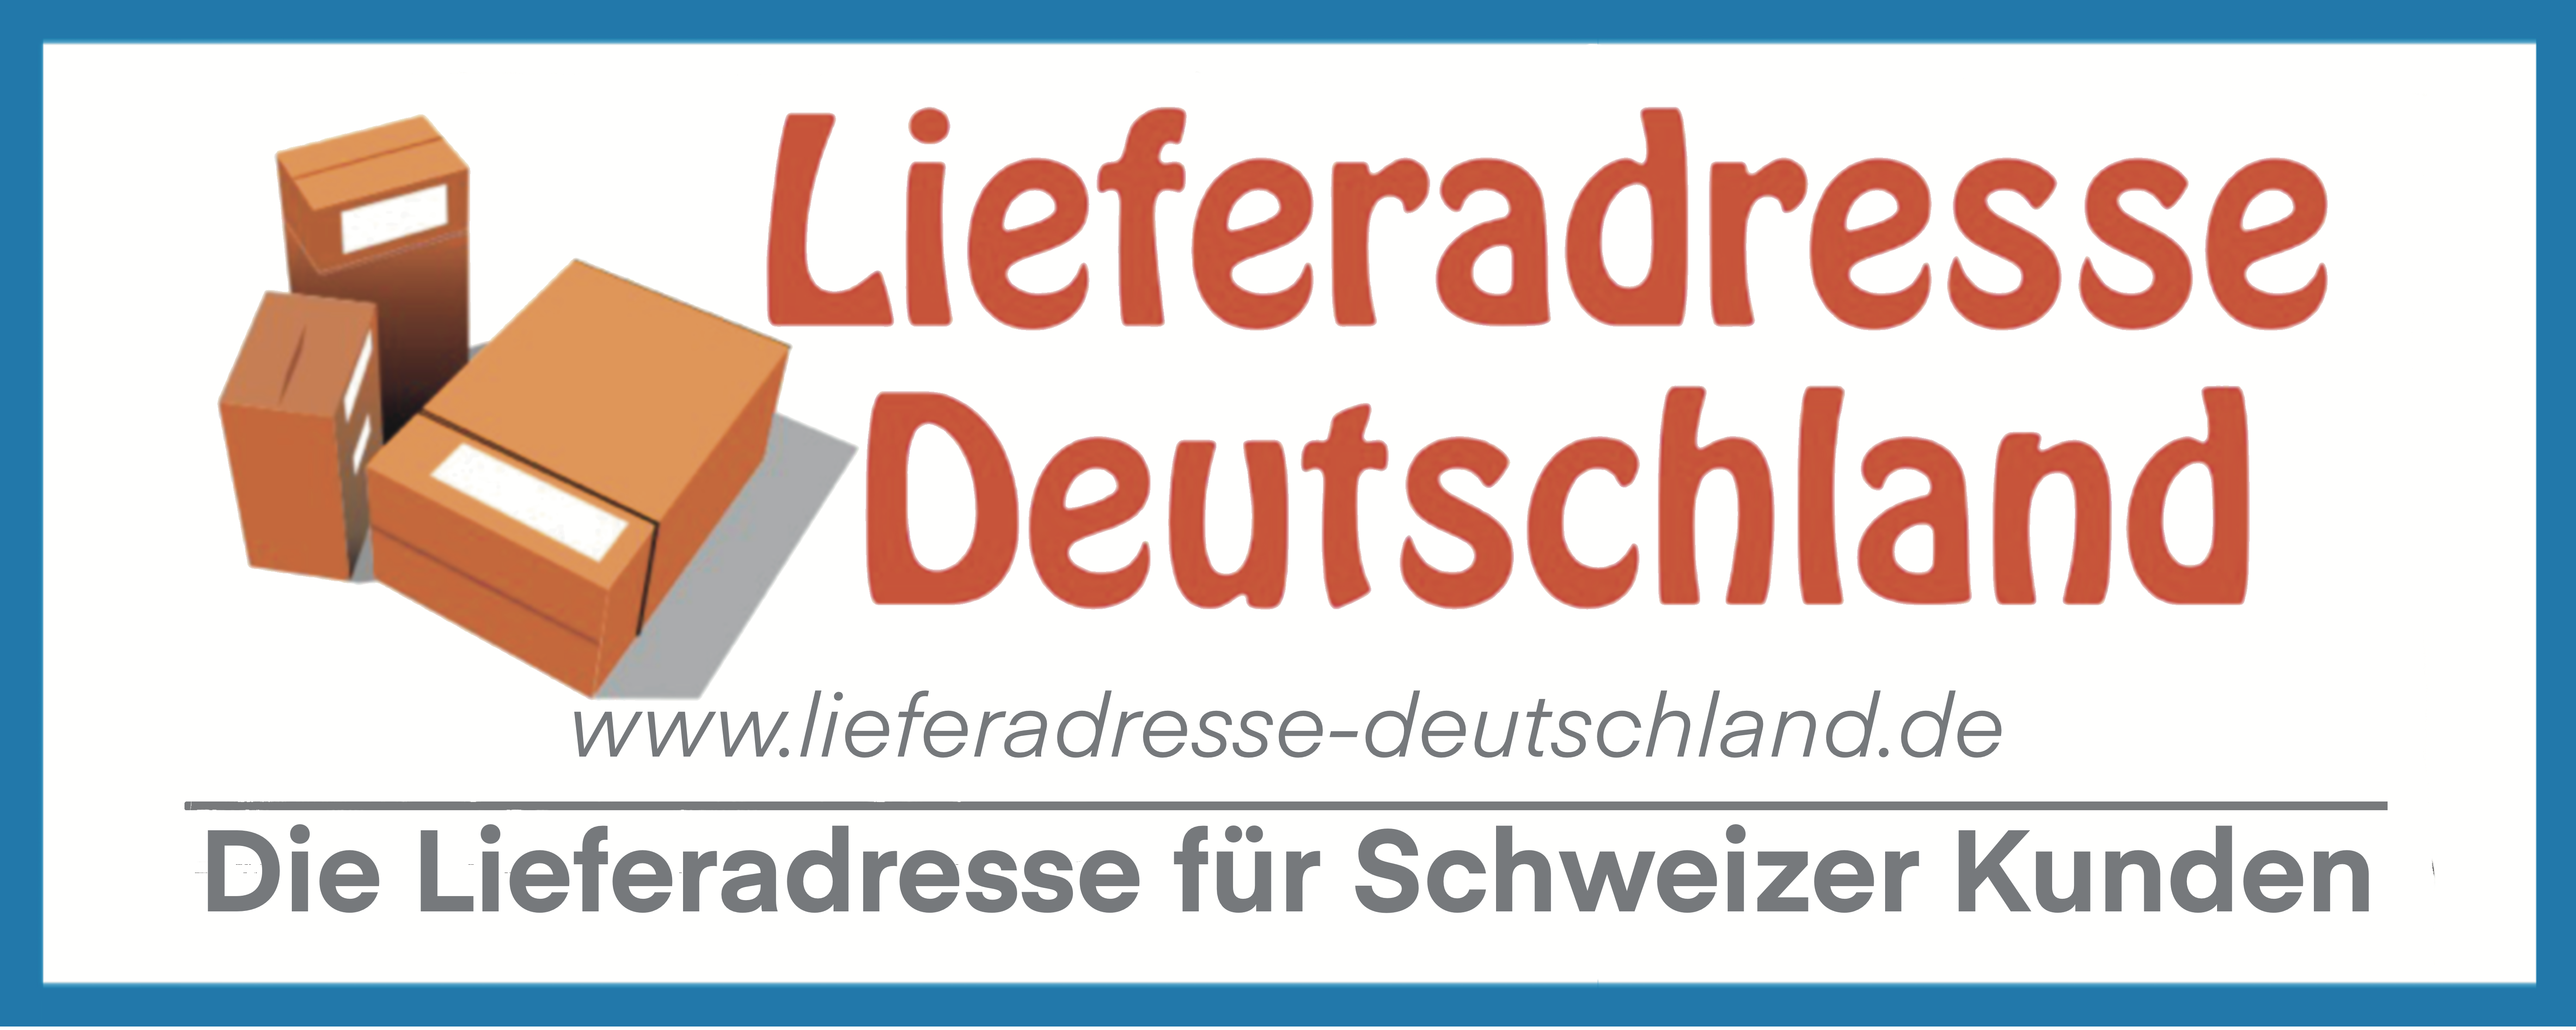 Lieferadresse-Deutschland